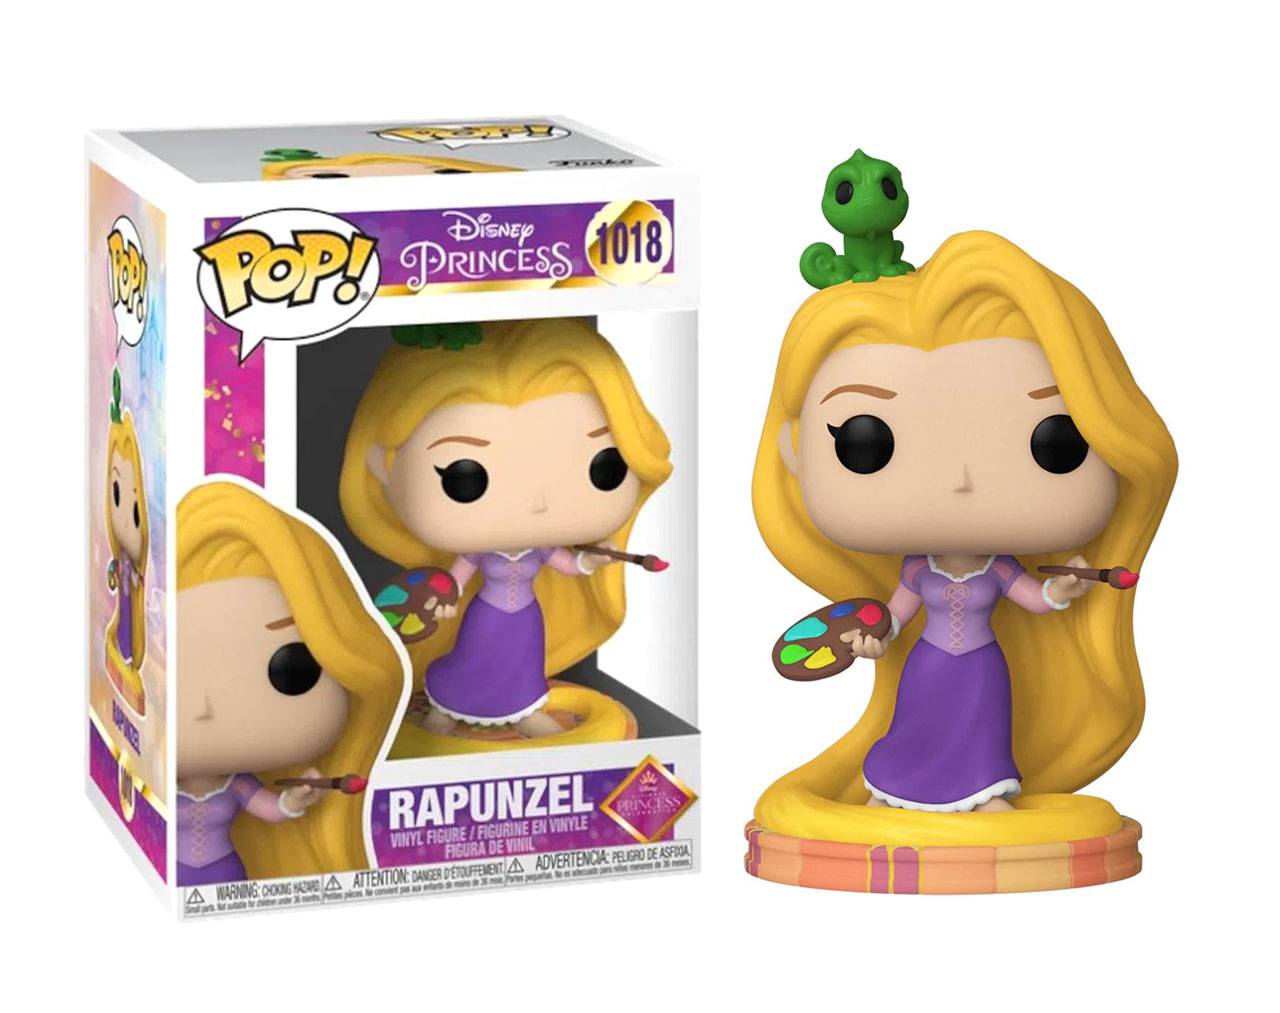 Rapunzel (Ultimate Princess Collection) Pop! Vinyl